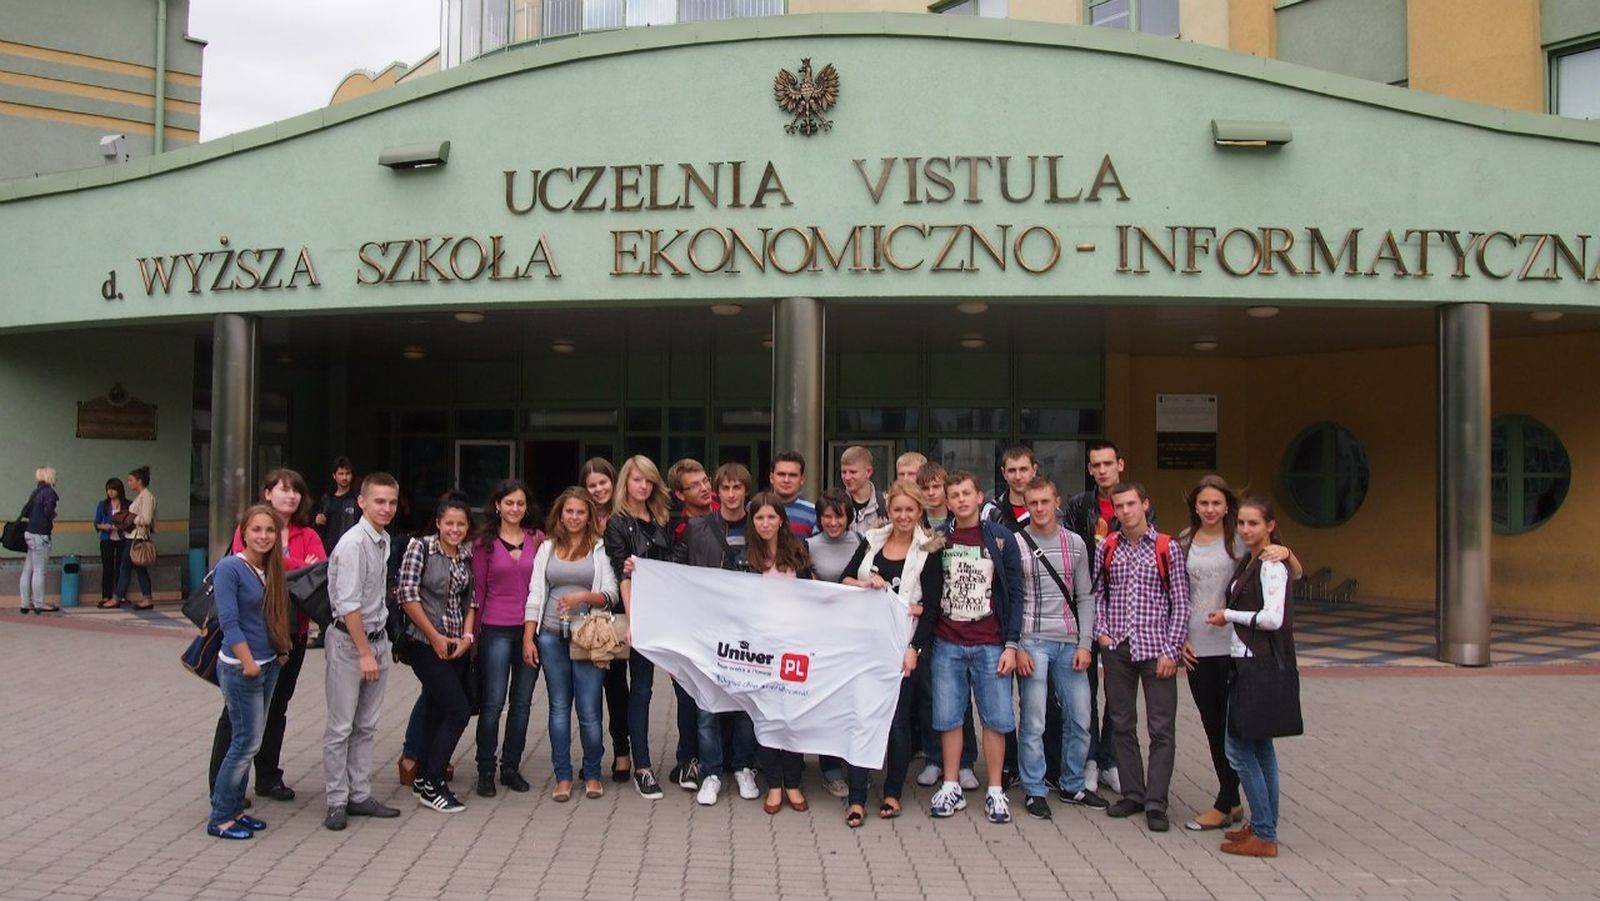 ᐈ варшавский университет для украинцев ᐈ высшее образование в польше с проектом "образование без границ"